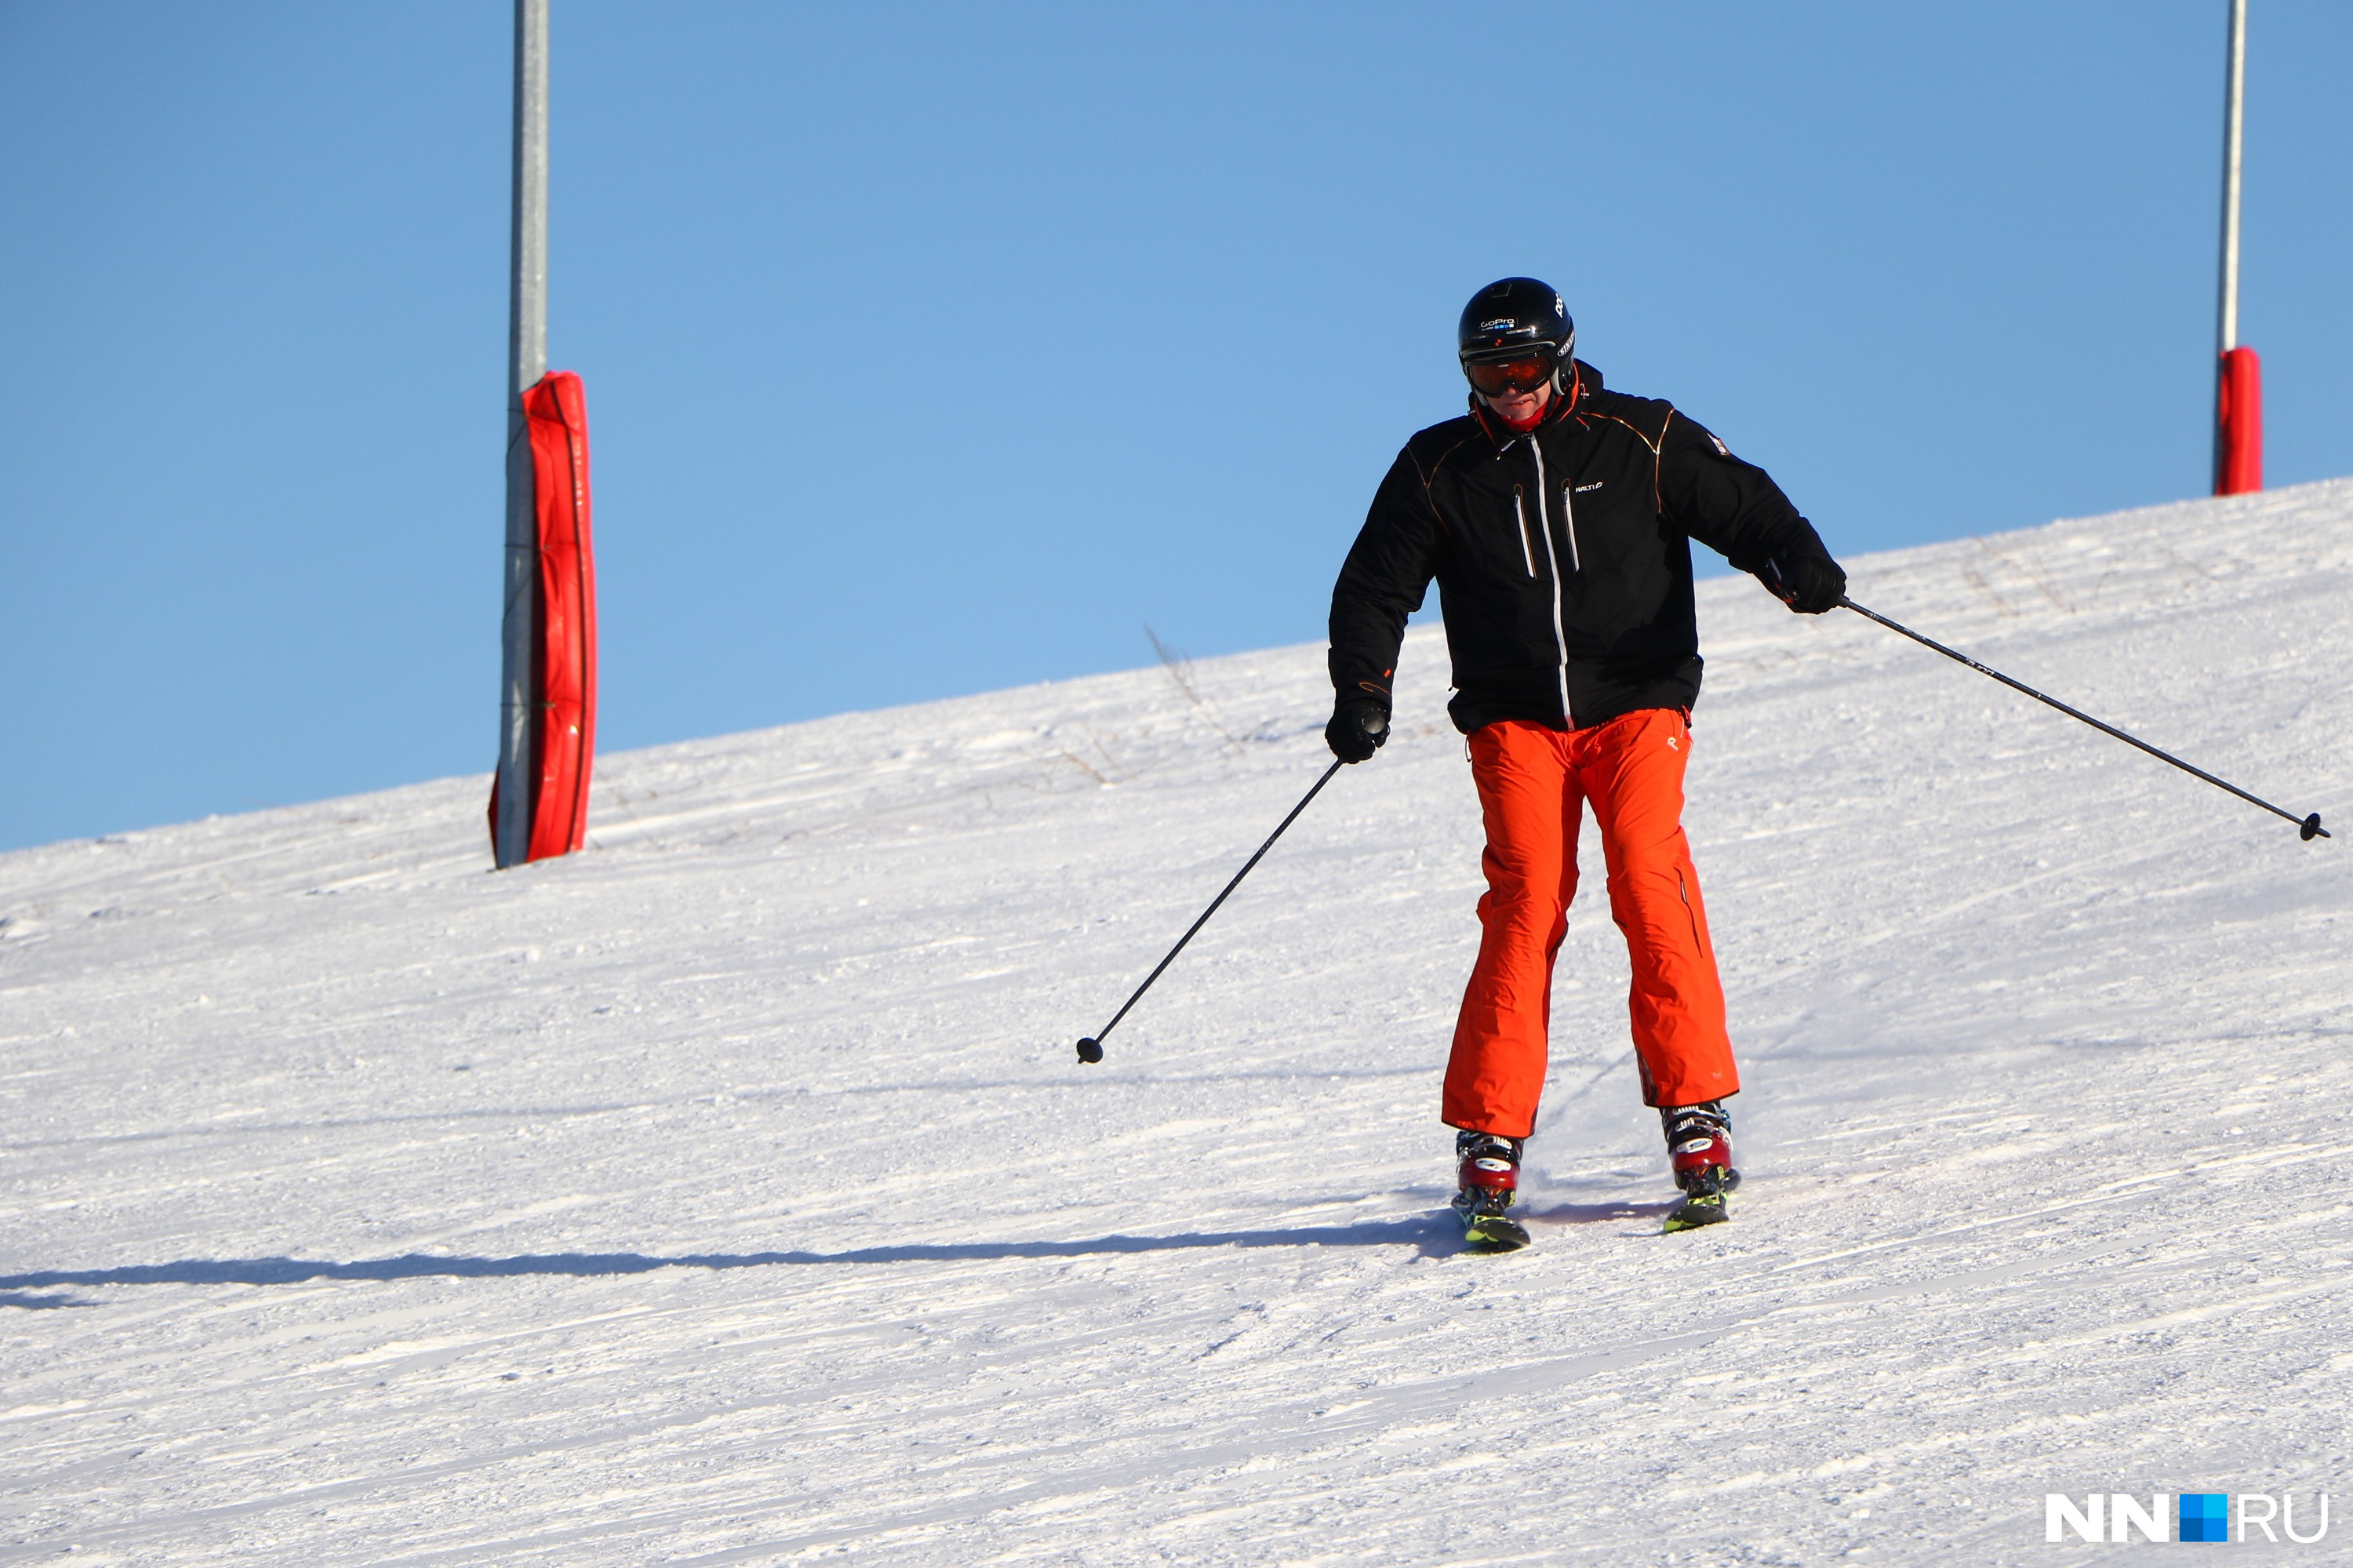 Прокат лыж в Хабарском — от 600 рублей